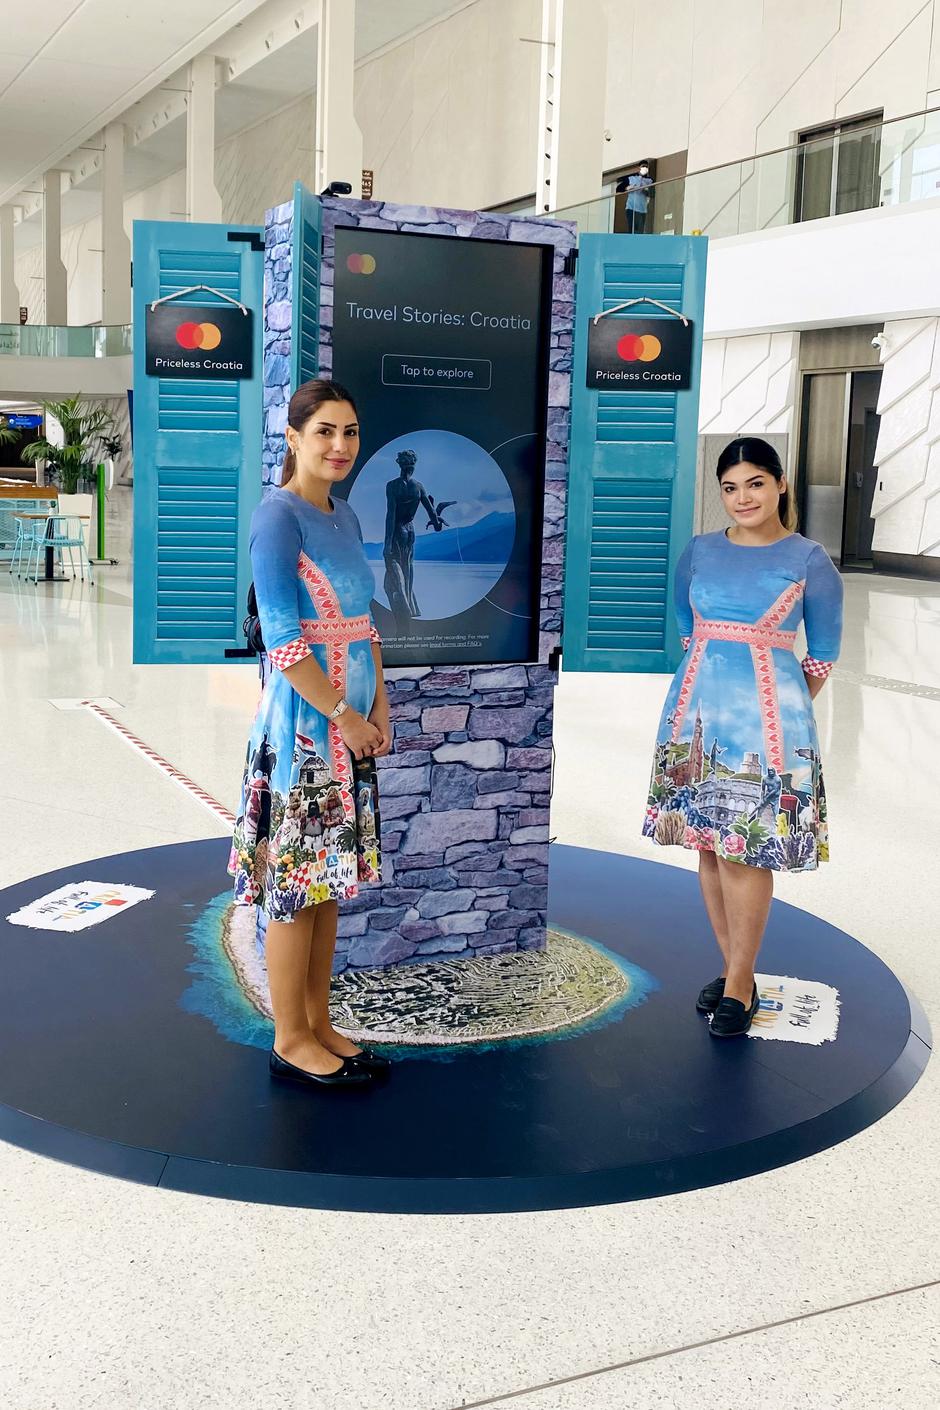 Promocija Hrvatske na EXPO Dubai 2020 kroz inovativno digitalno iskustvo